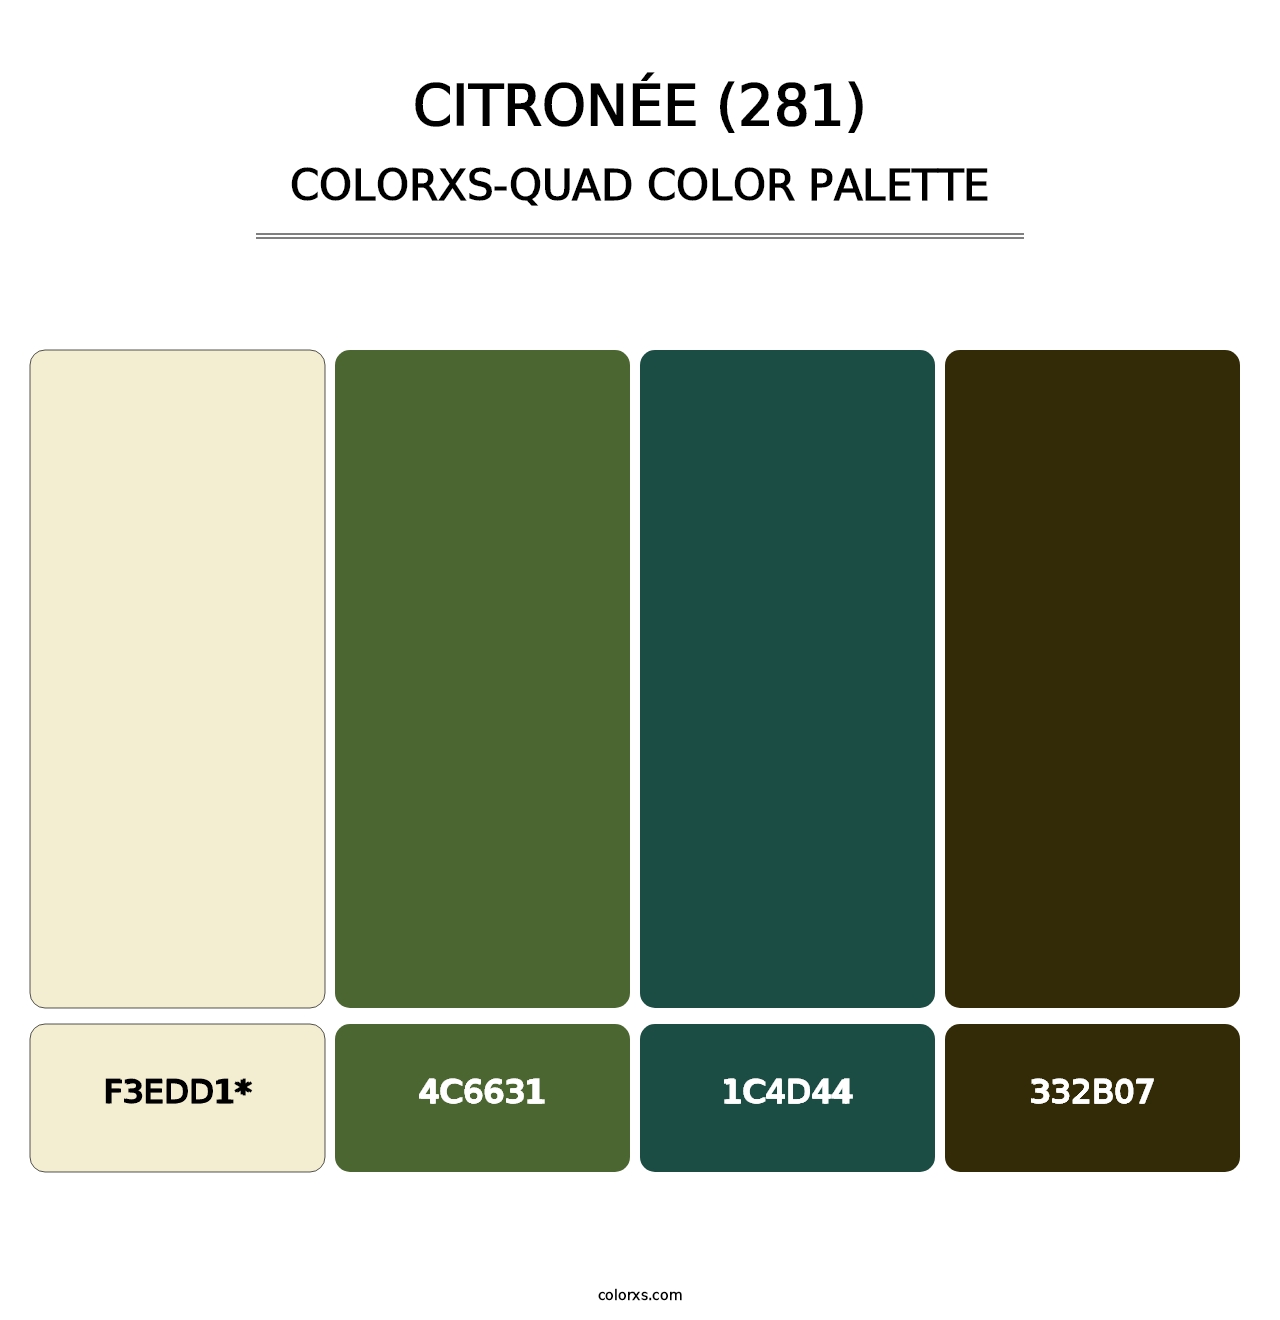 Citronée (281) - Colorxs Quad Palette